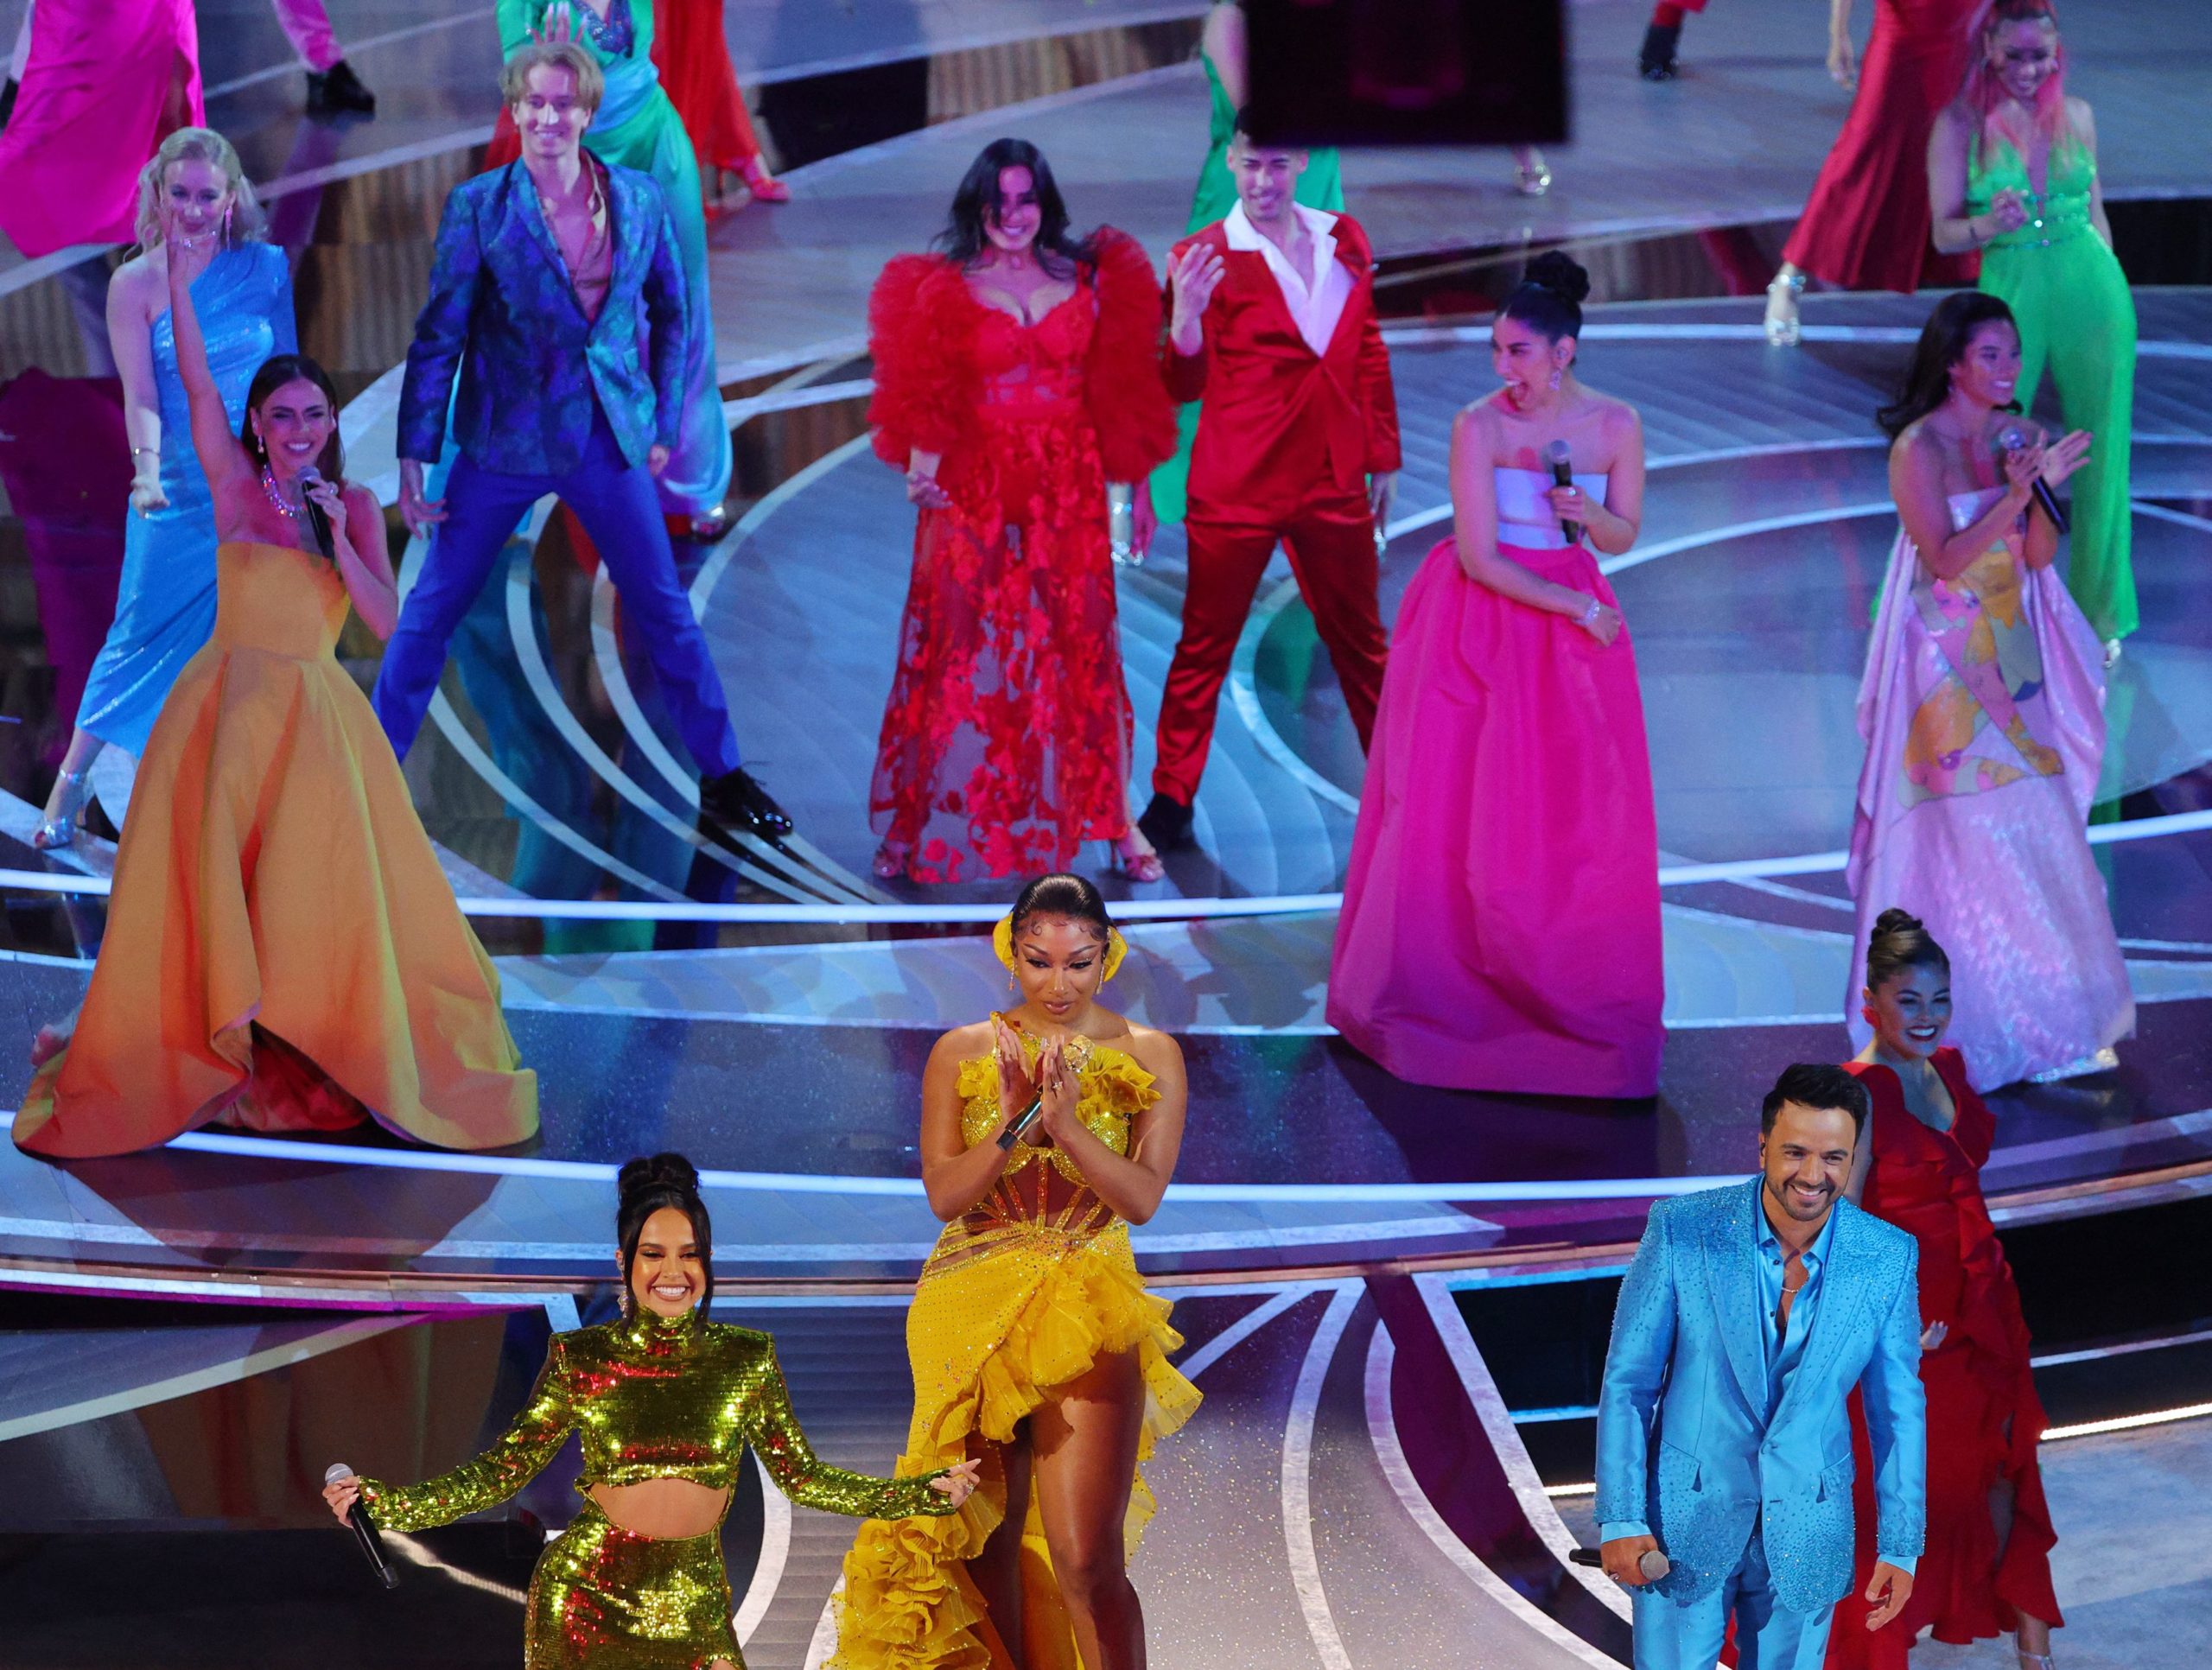 Foto da apresentação da música We Don't Talk About Bruno, no palco do Oscar 2022. Na foto, vemos várias pessoas cantando e posando, usando roupas coloridas.